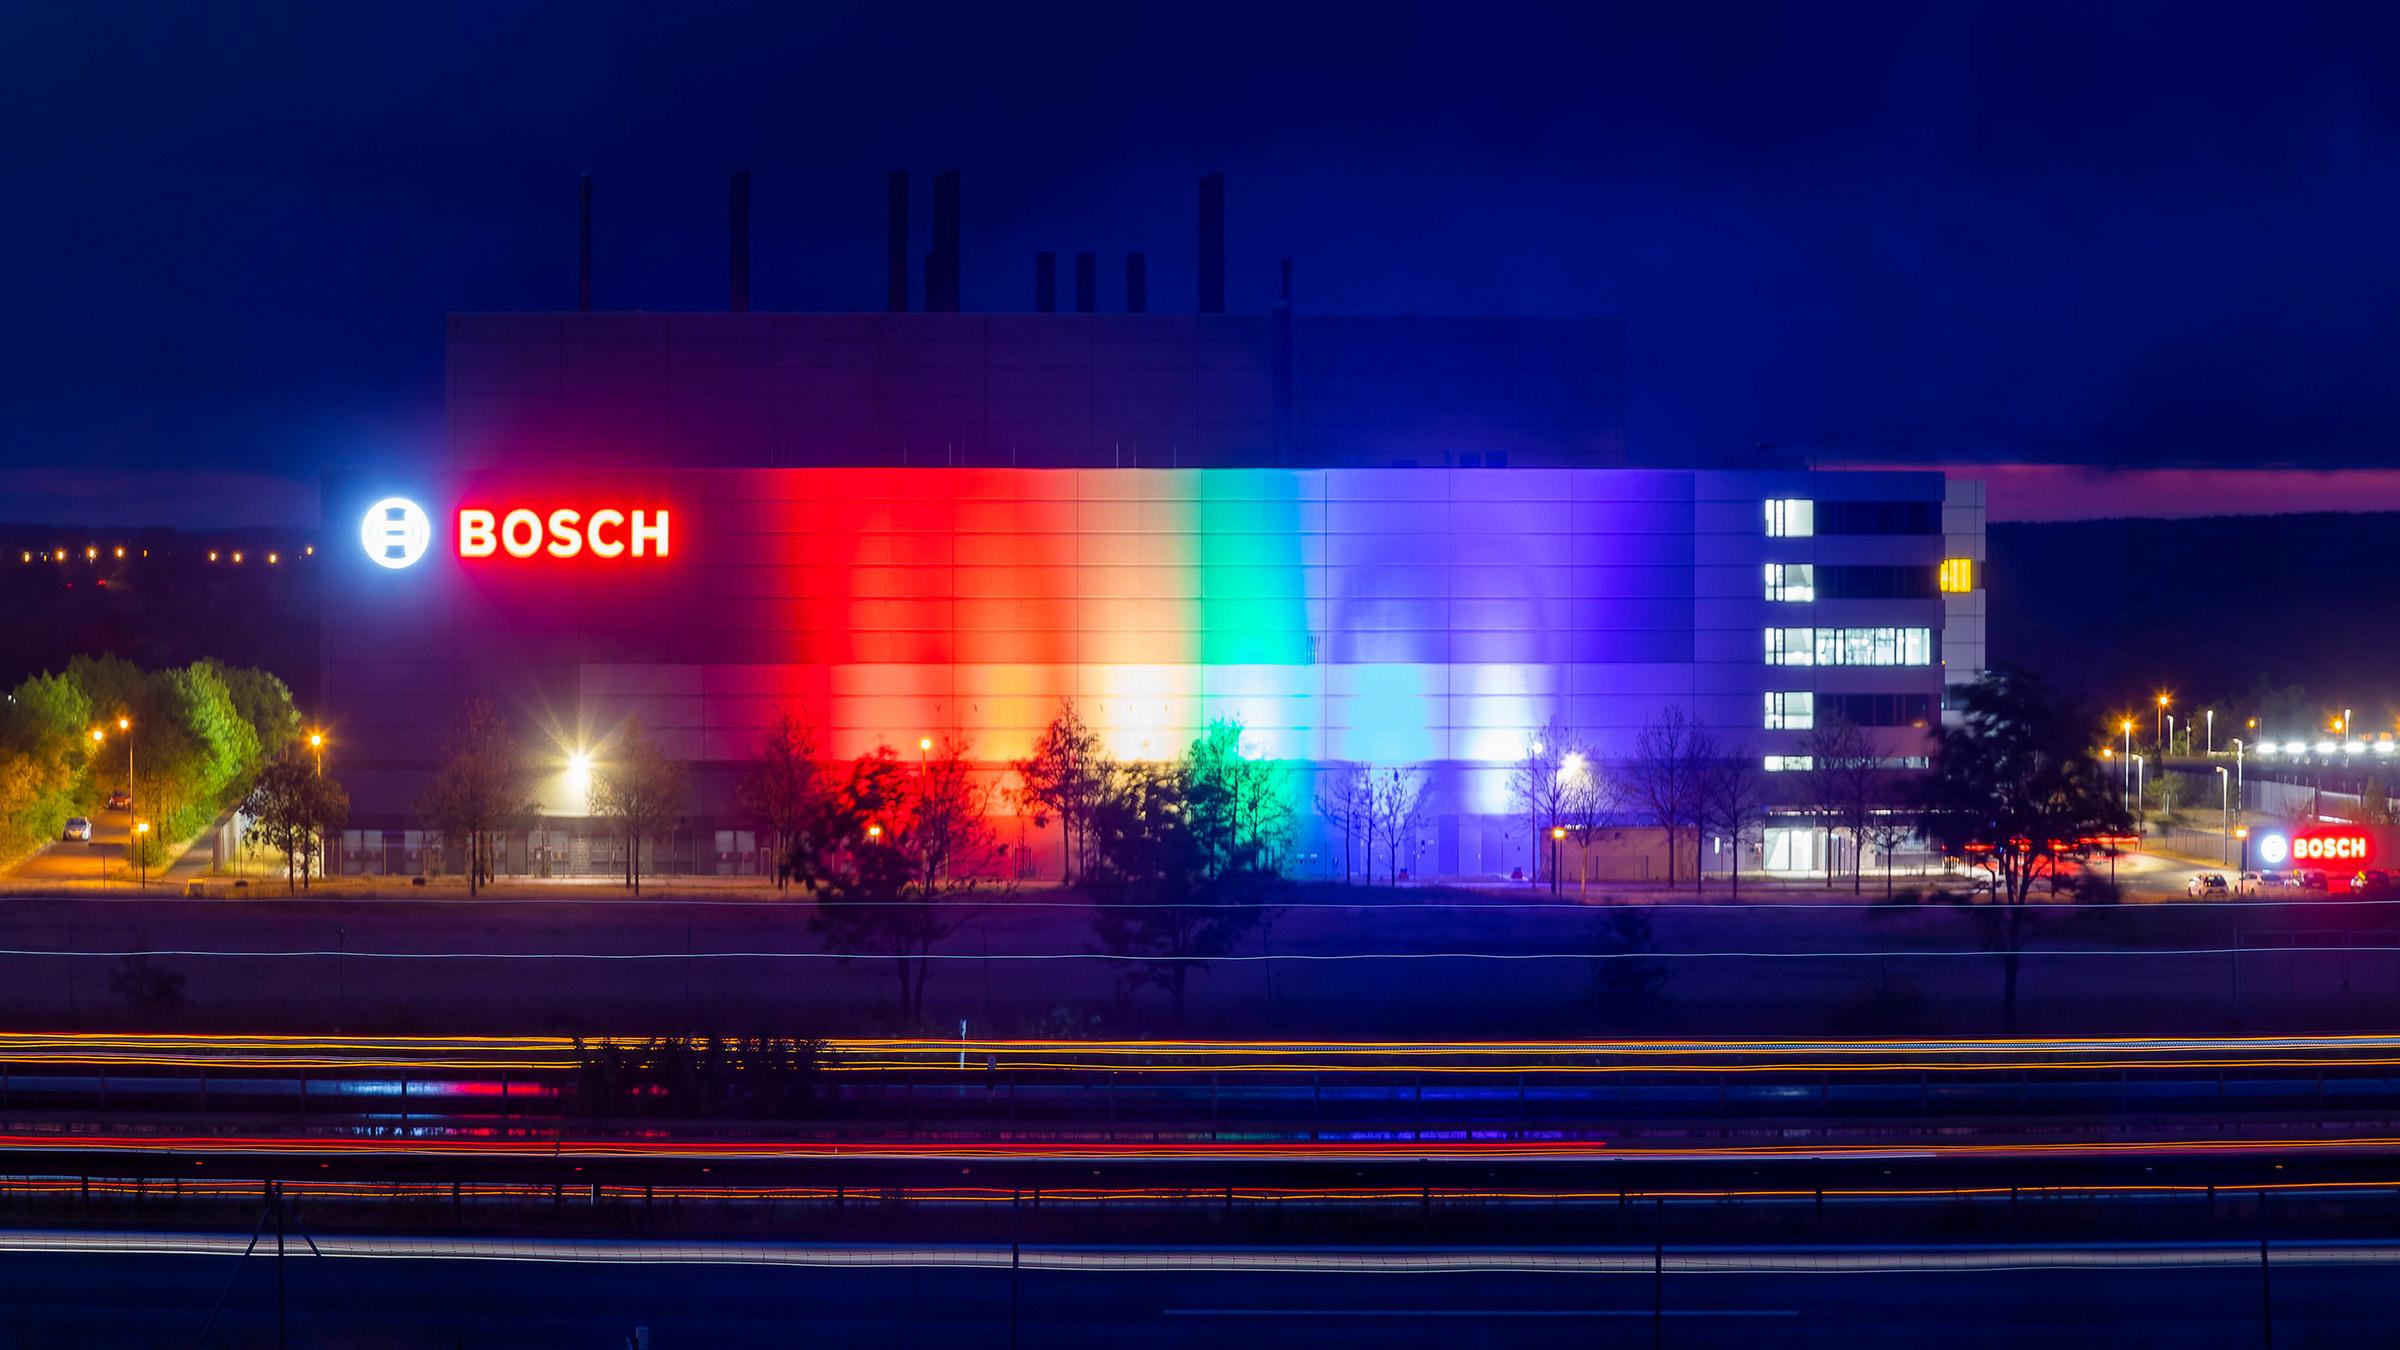 Ob Bosch, BMW oder Burger King: Zum Pride Month erstrahlen sie alle in den Farben des Regenbogens